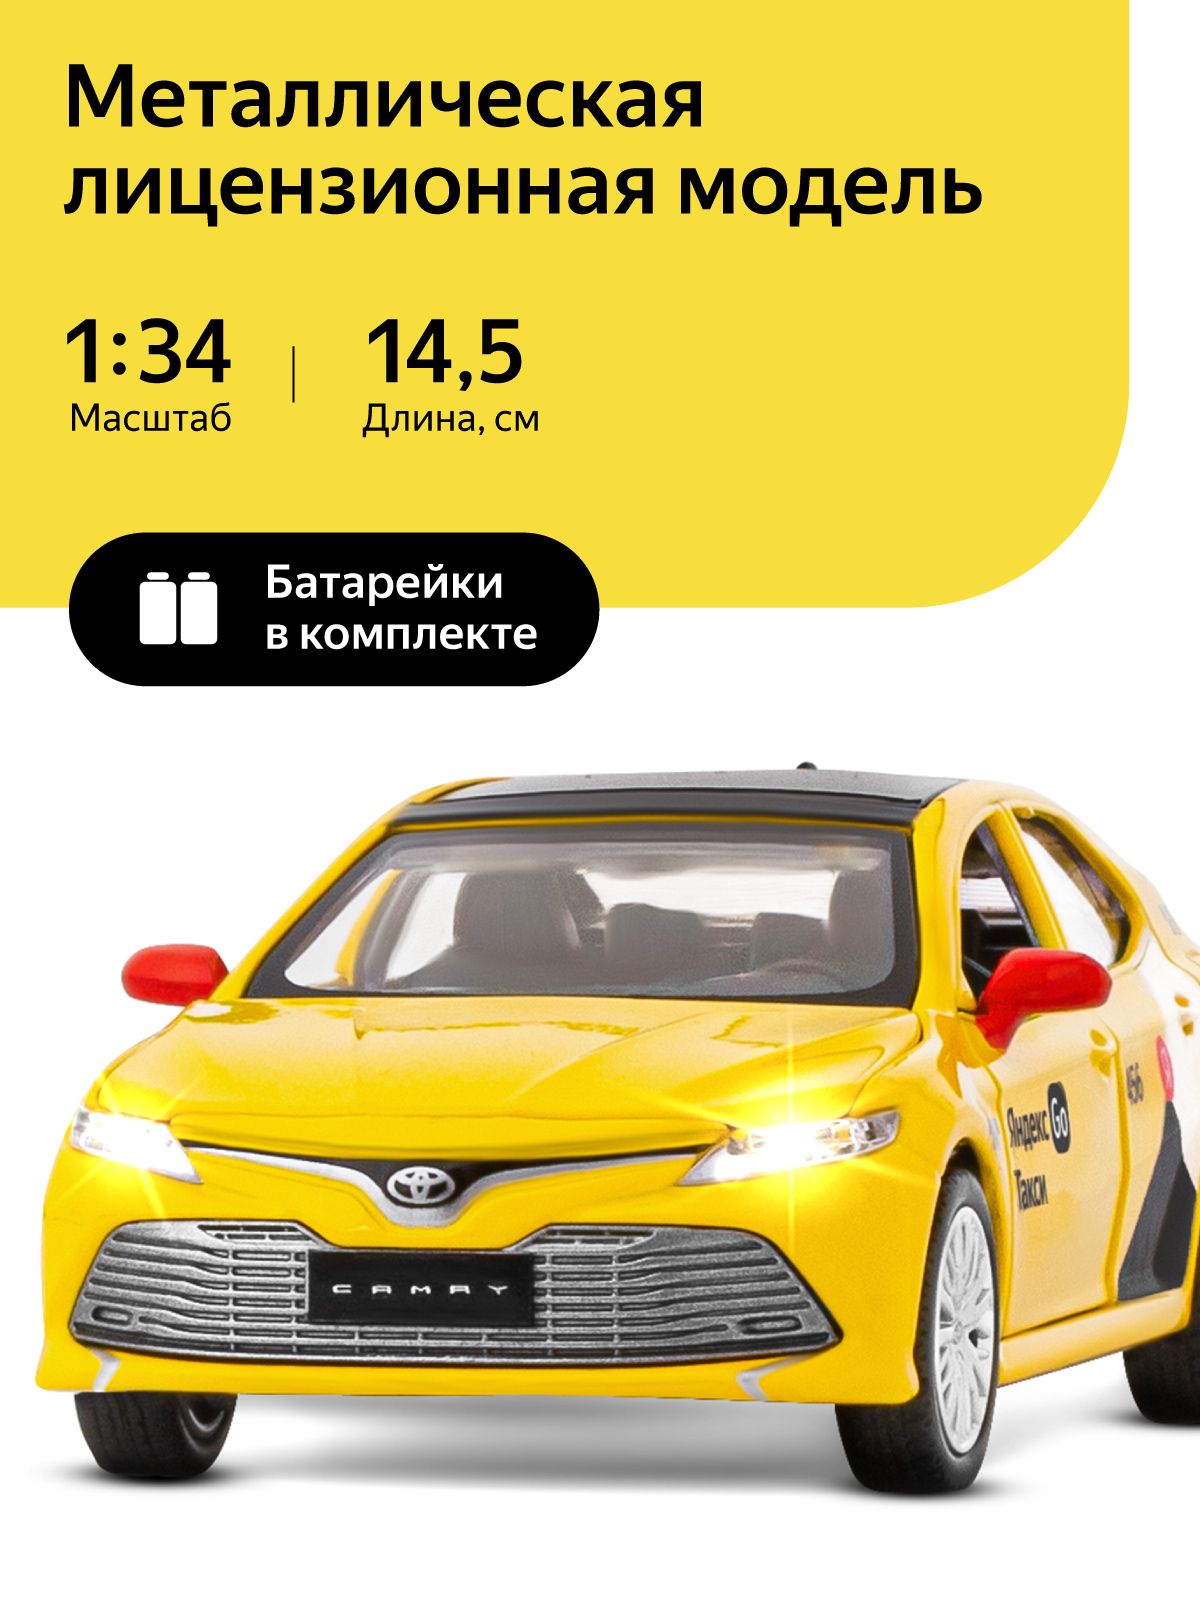 Машинка металлическая Яндекс Go Toyota Camry, 1:34, инерционная, желтый, JB1251482 rav4 corolla camry car remote key 3button toy43 4d67 for toyota 315mhz remtekey